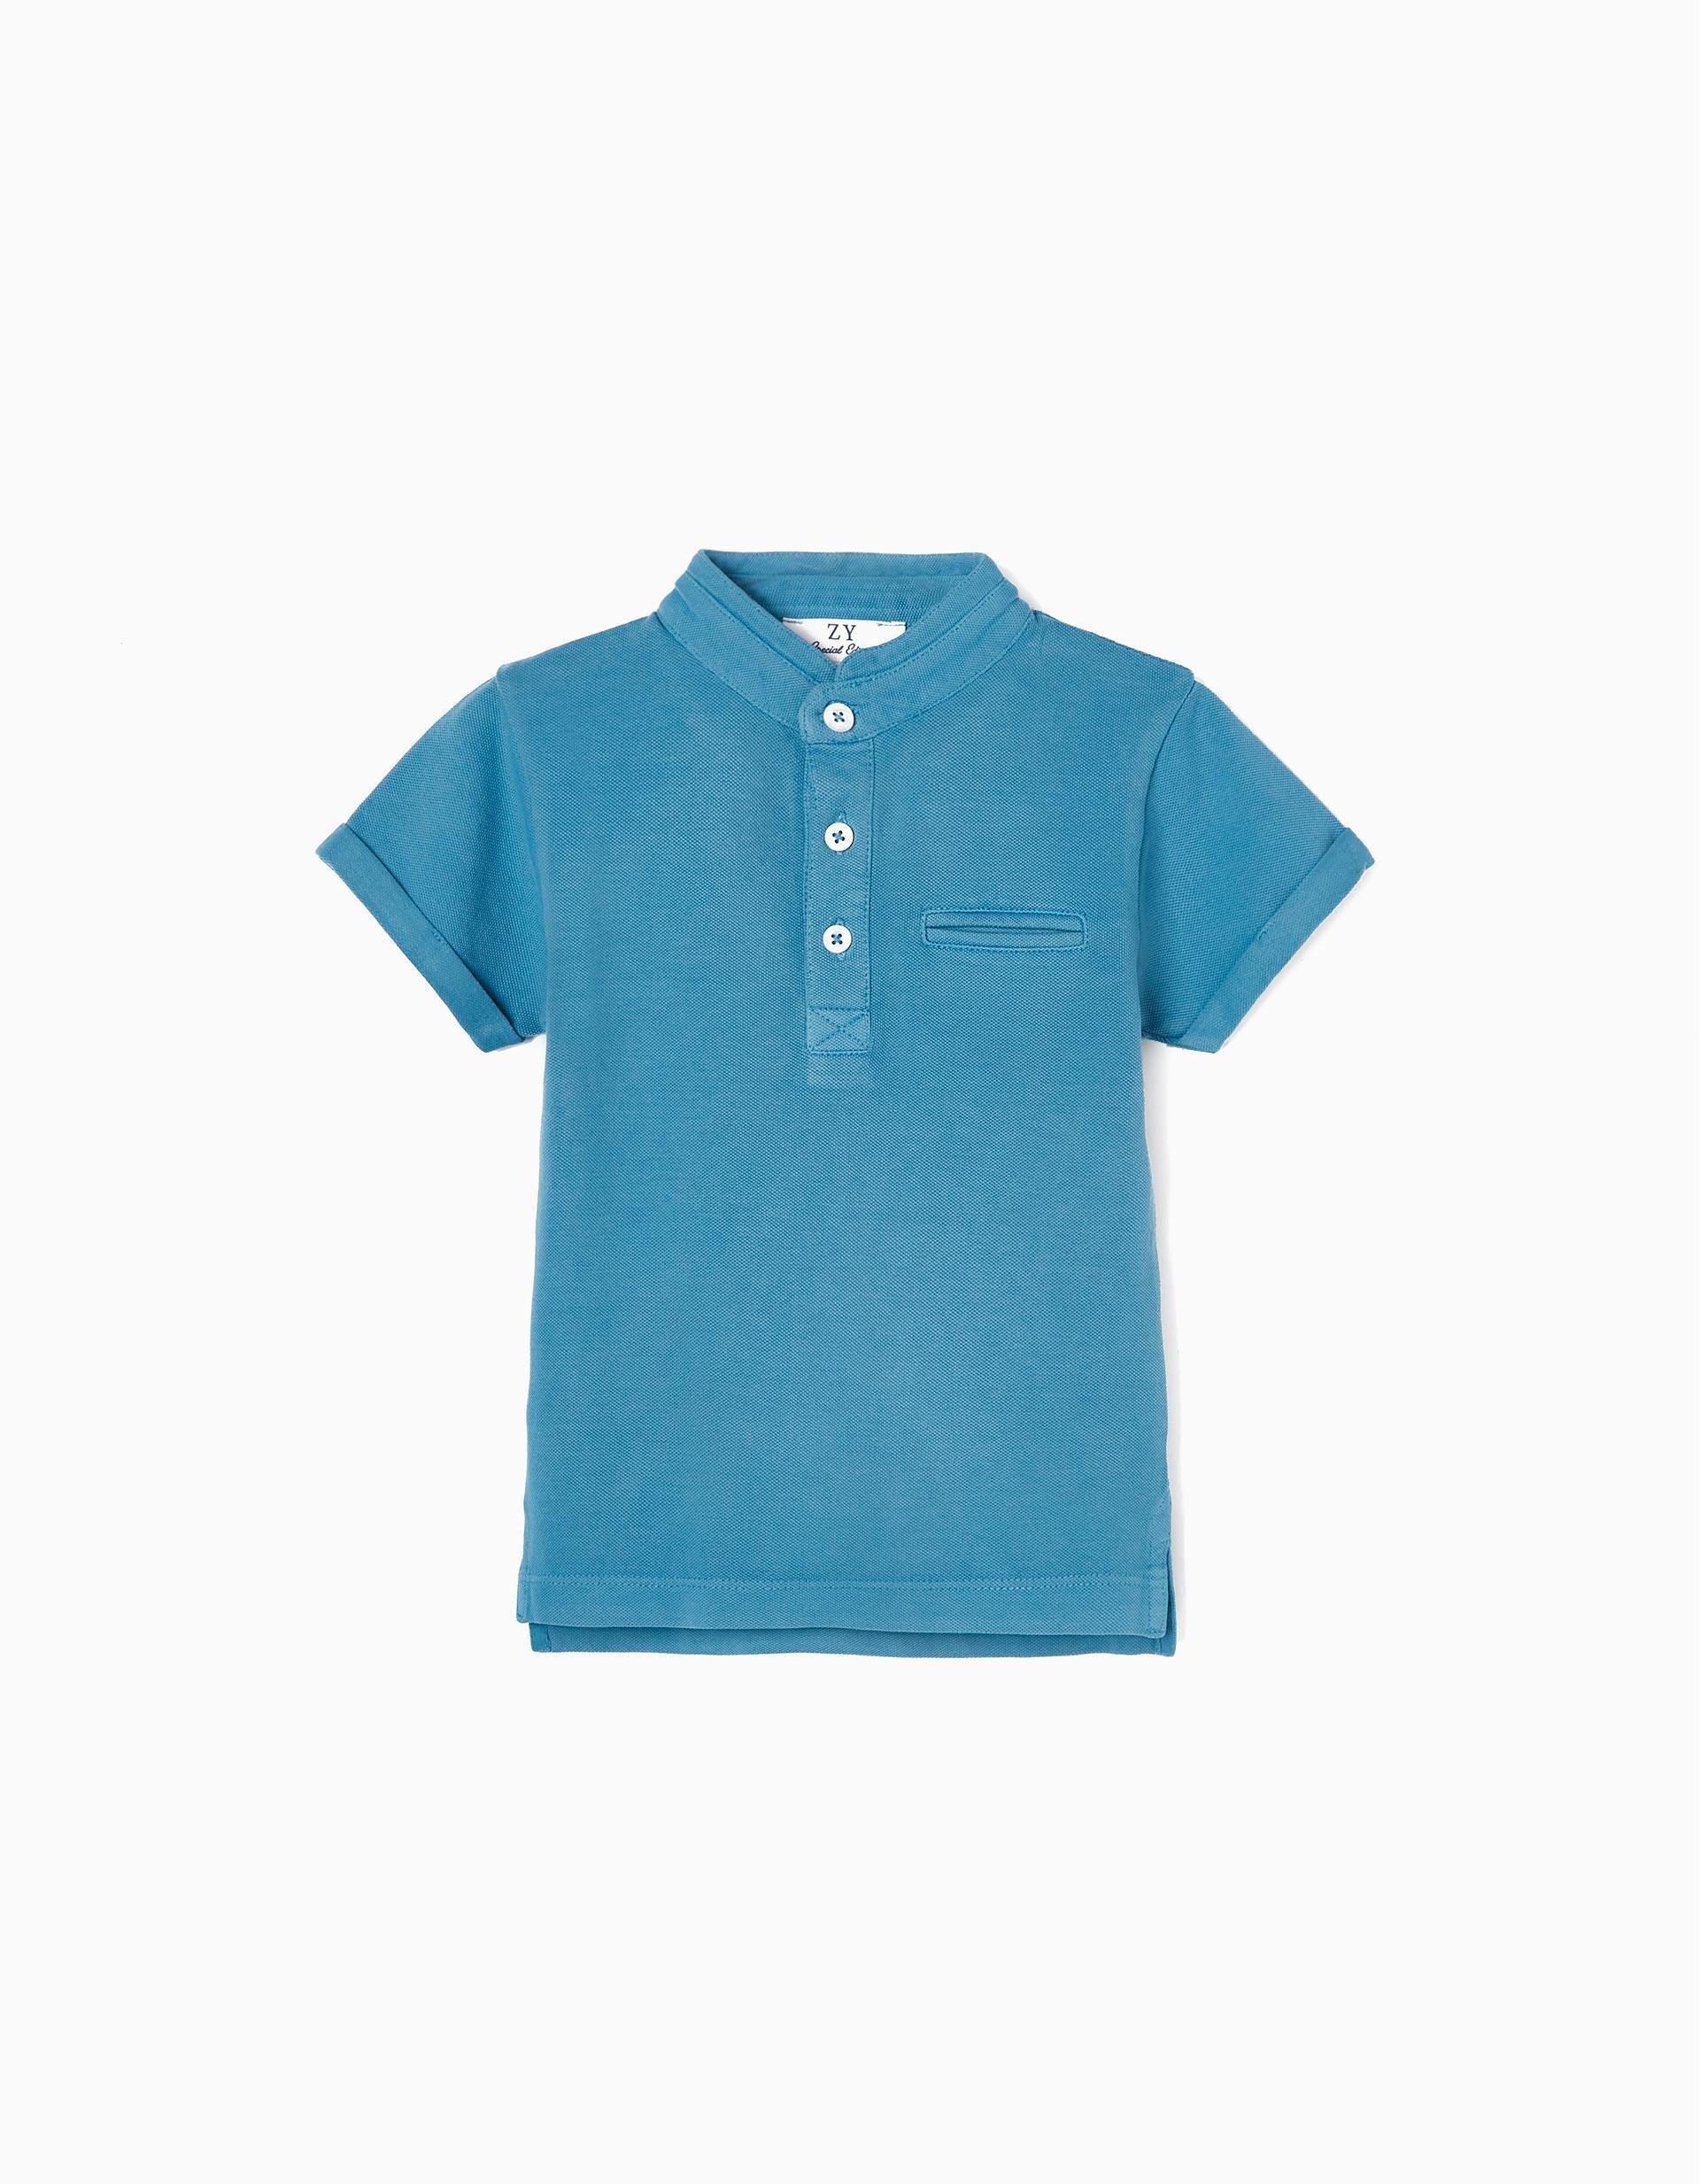 Zippy - Blue Mao Collar Cotton Polo Shirt, Baby Boys